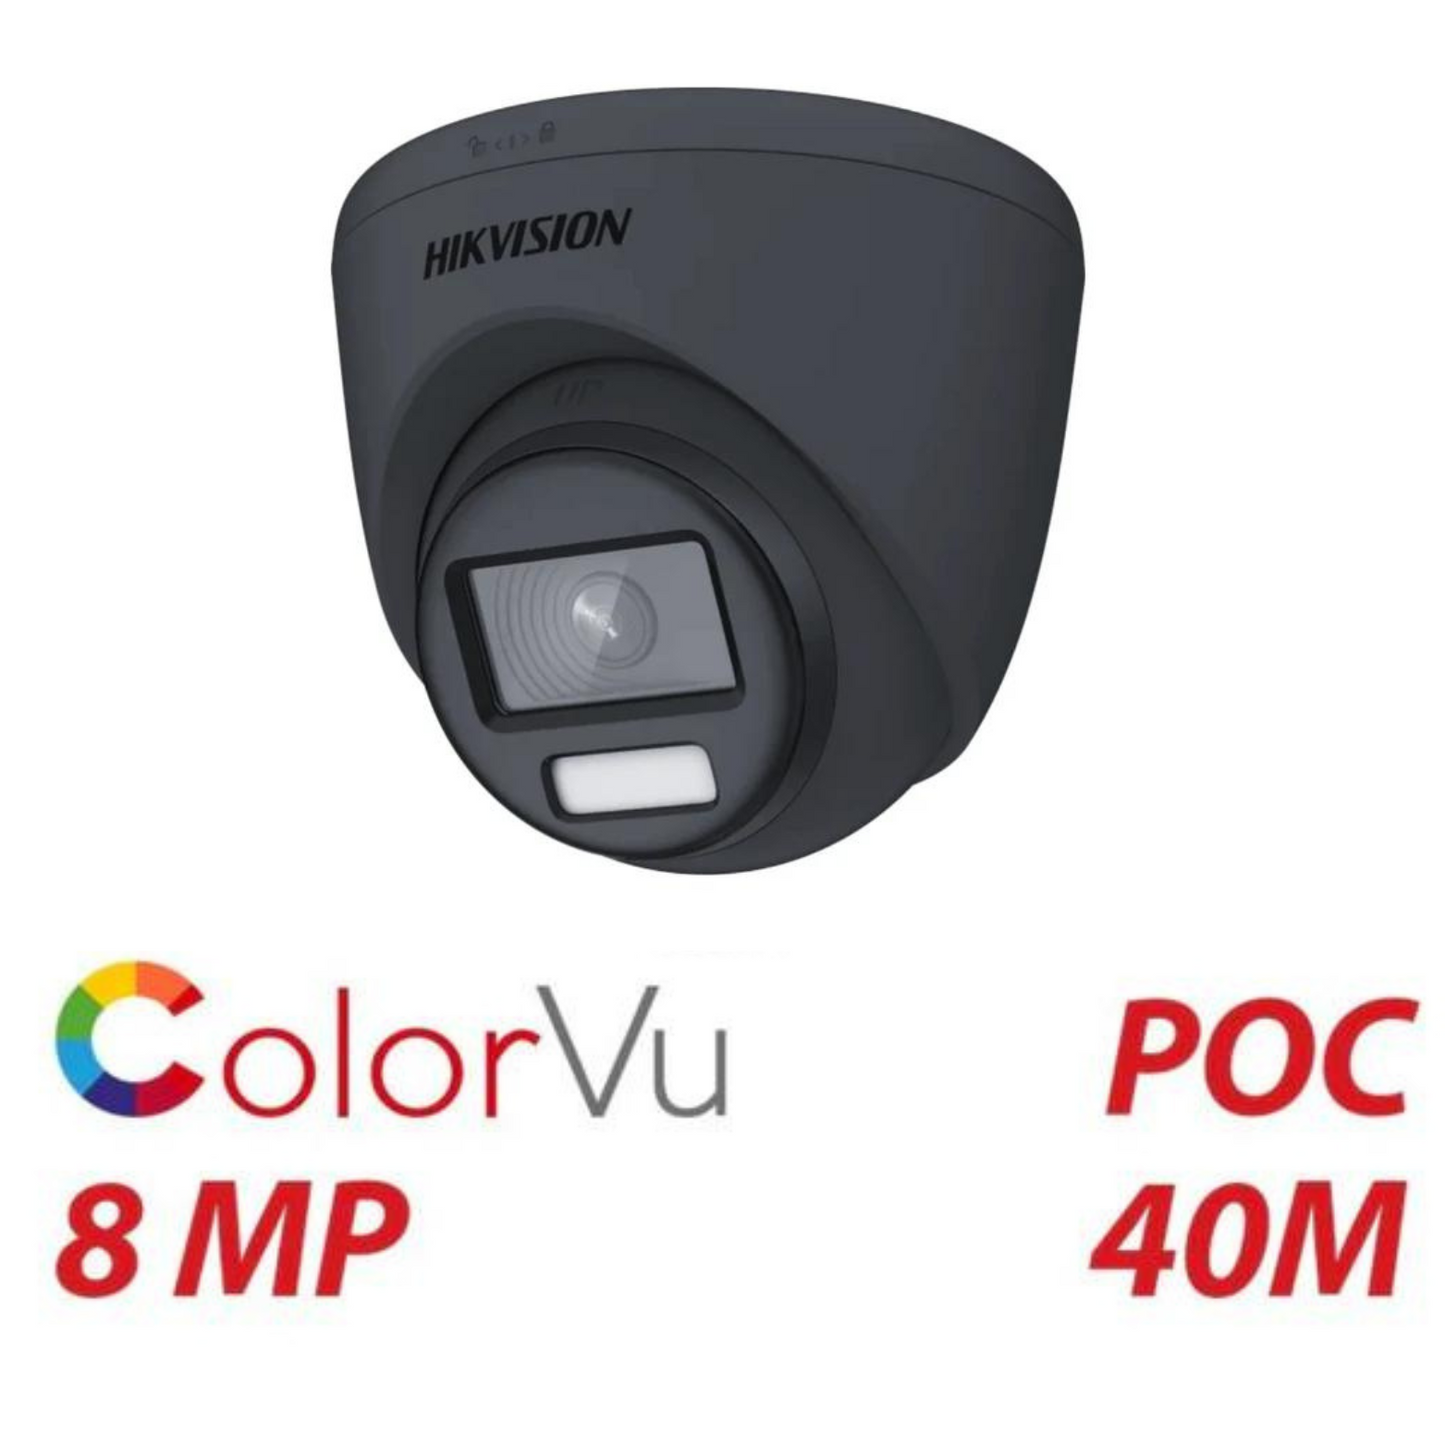 8mp 4k Hikvision ColorVu POC DS-2CE72UF3T-E 2.8mm